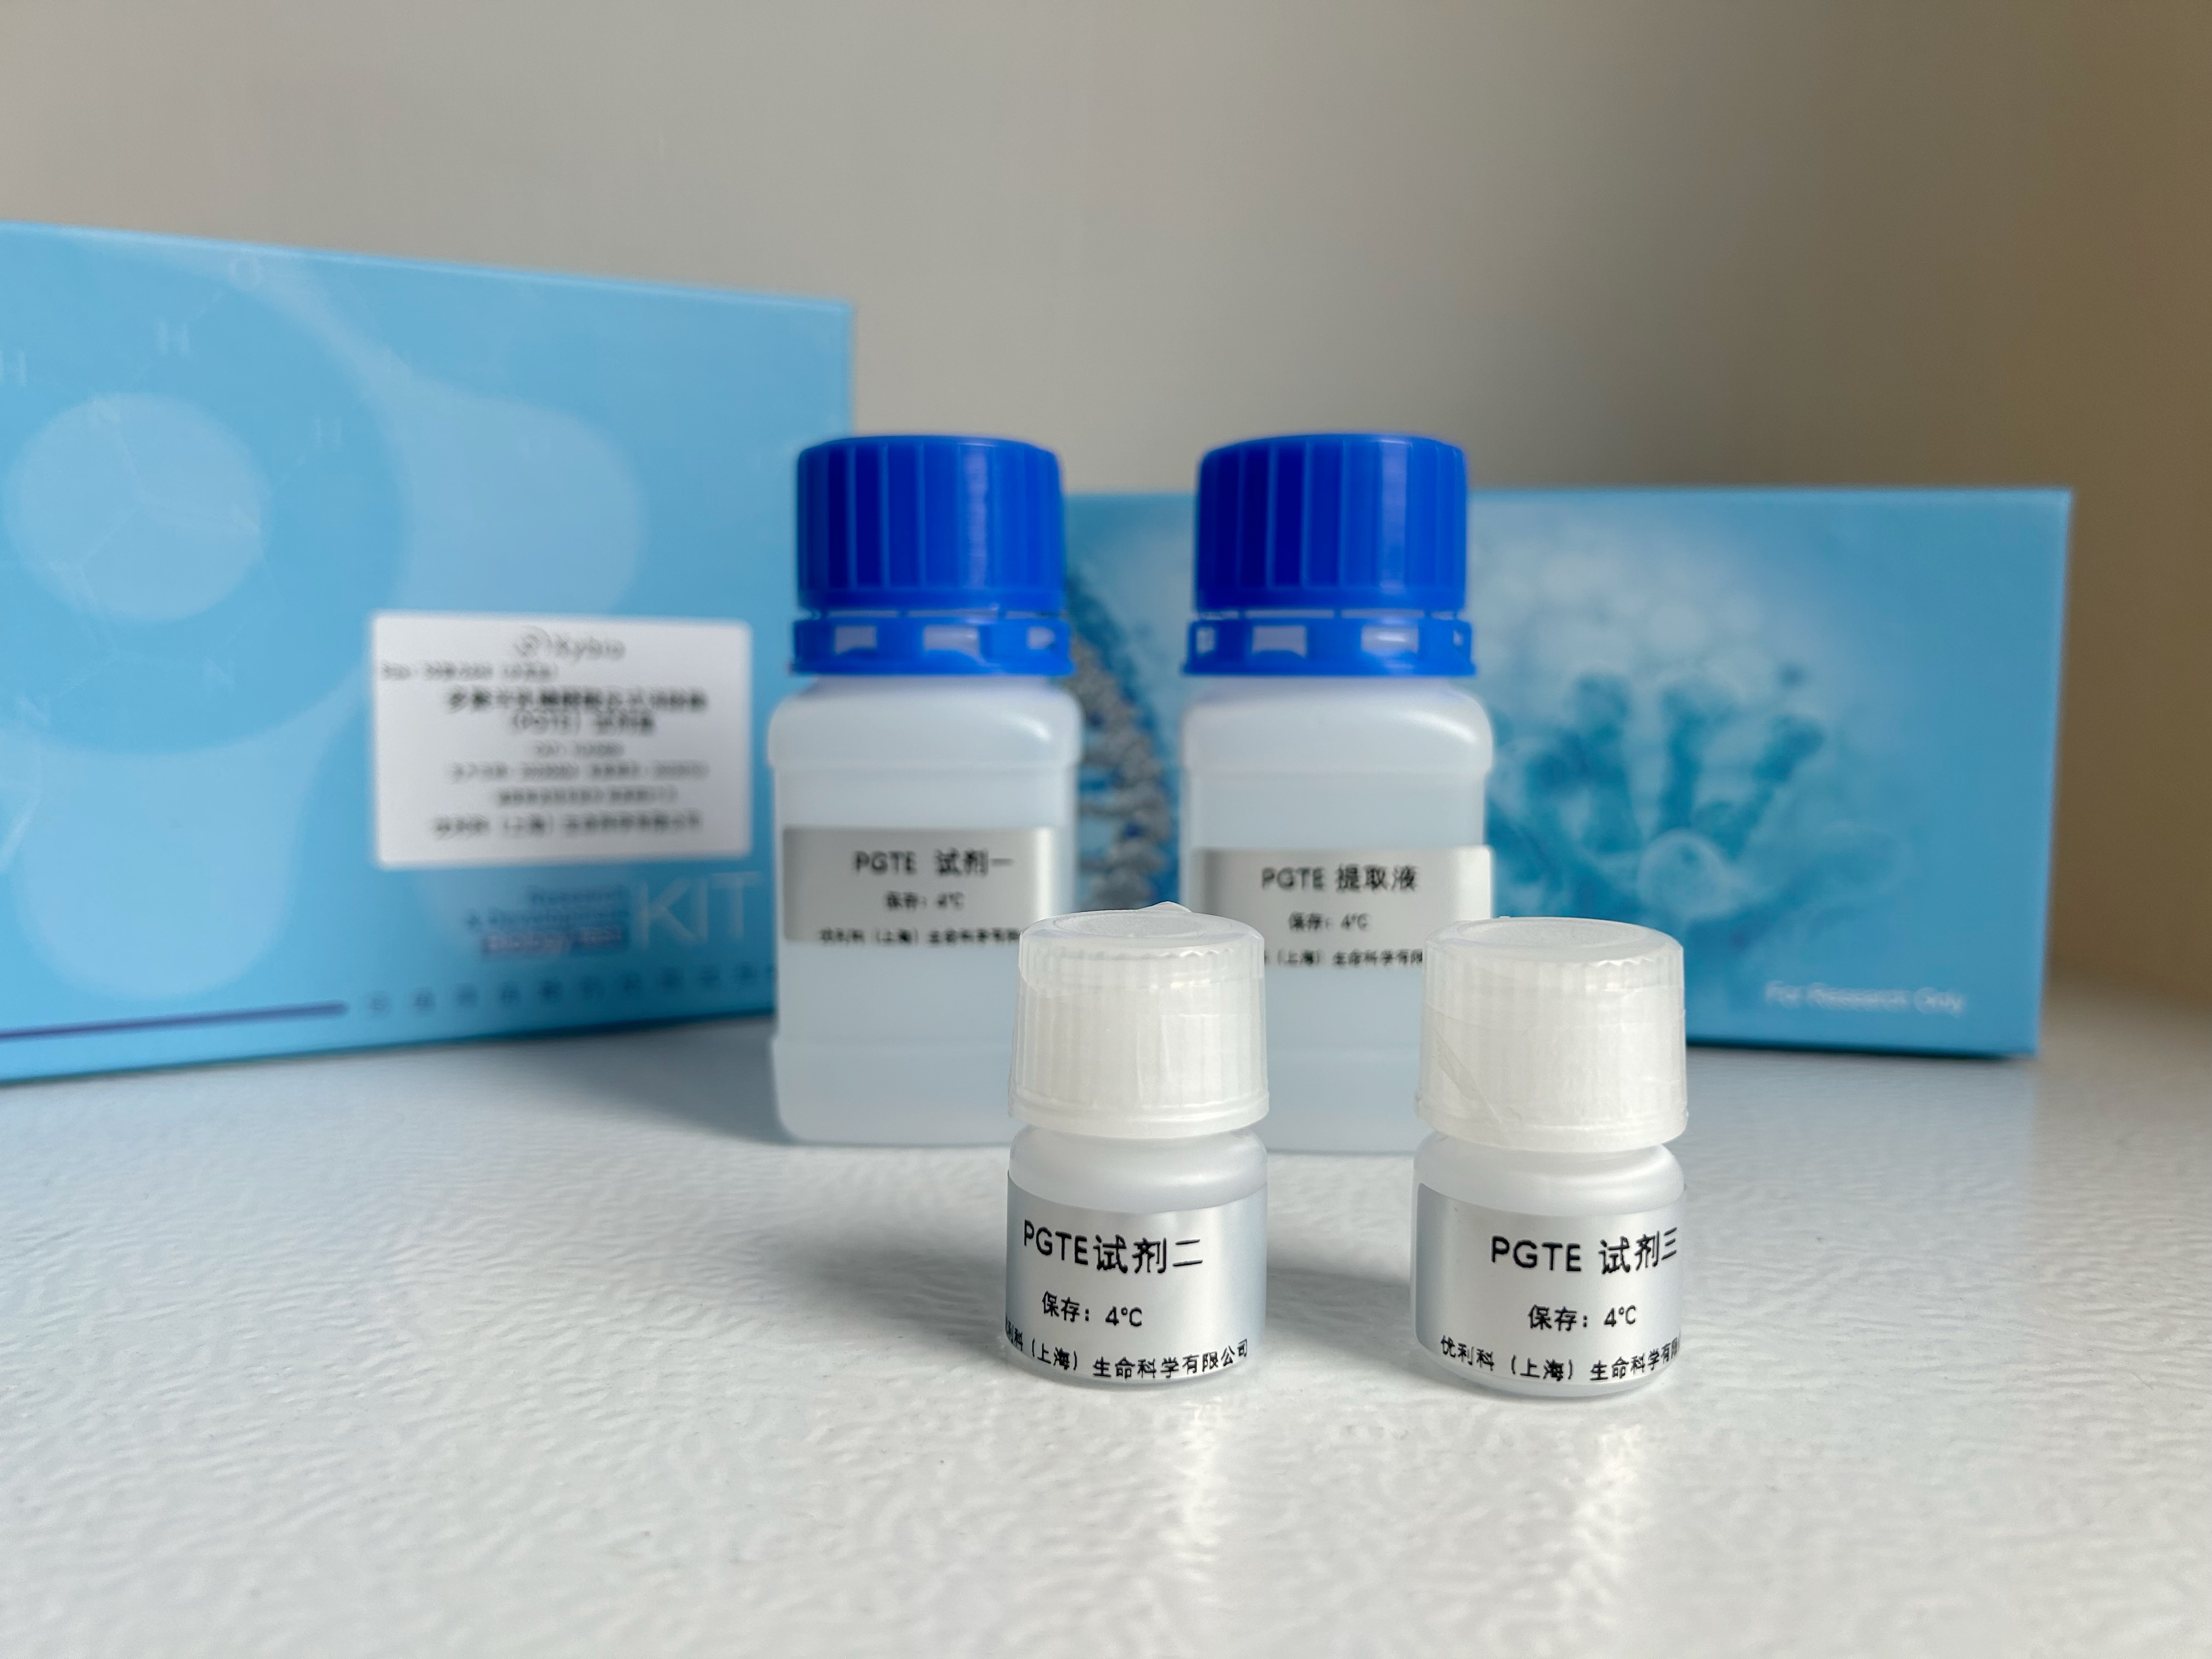 血清低密度脂蛋白（LDL-C）测试盒